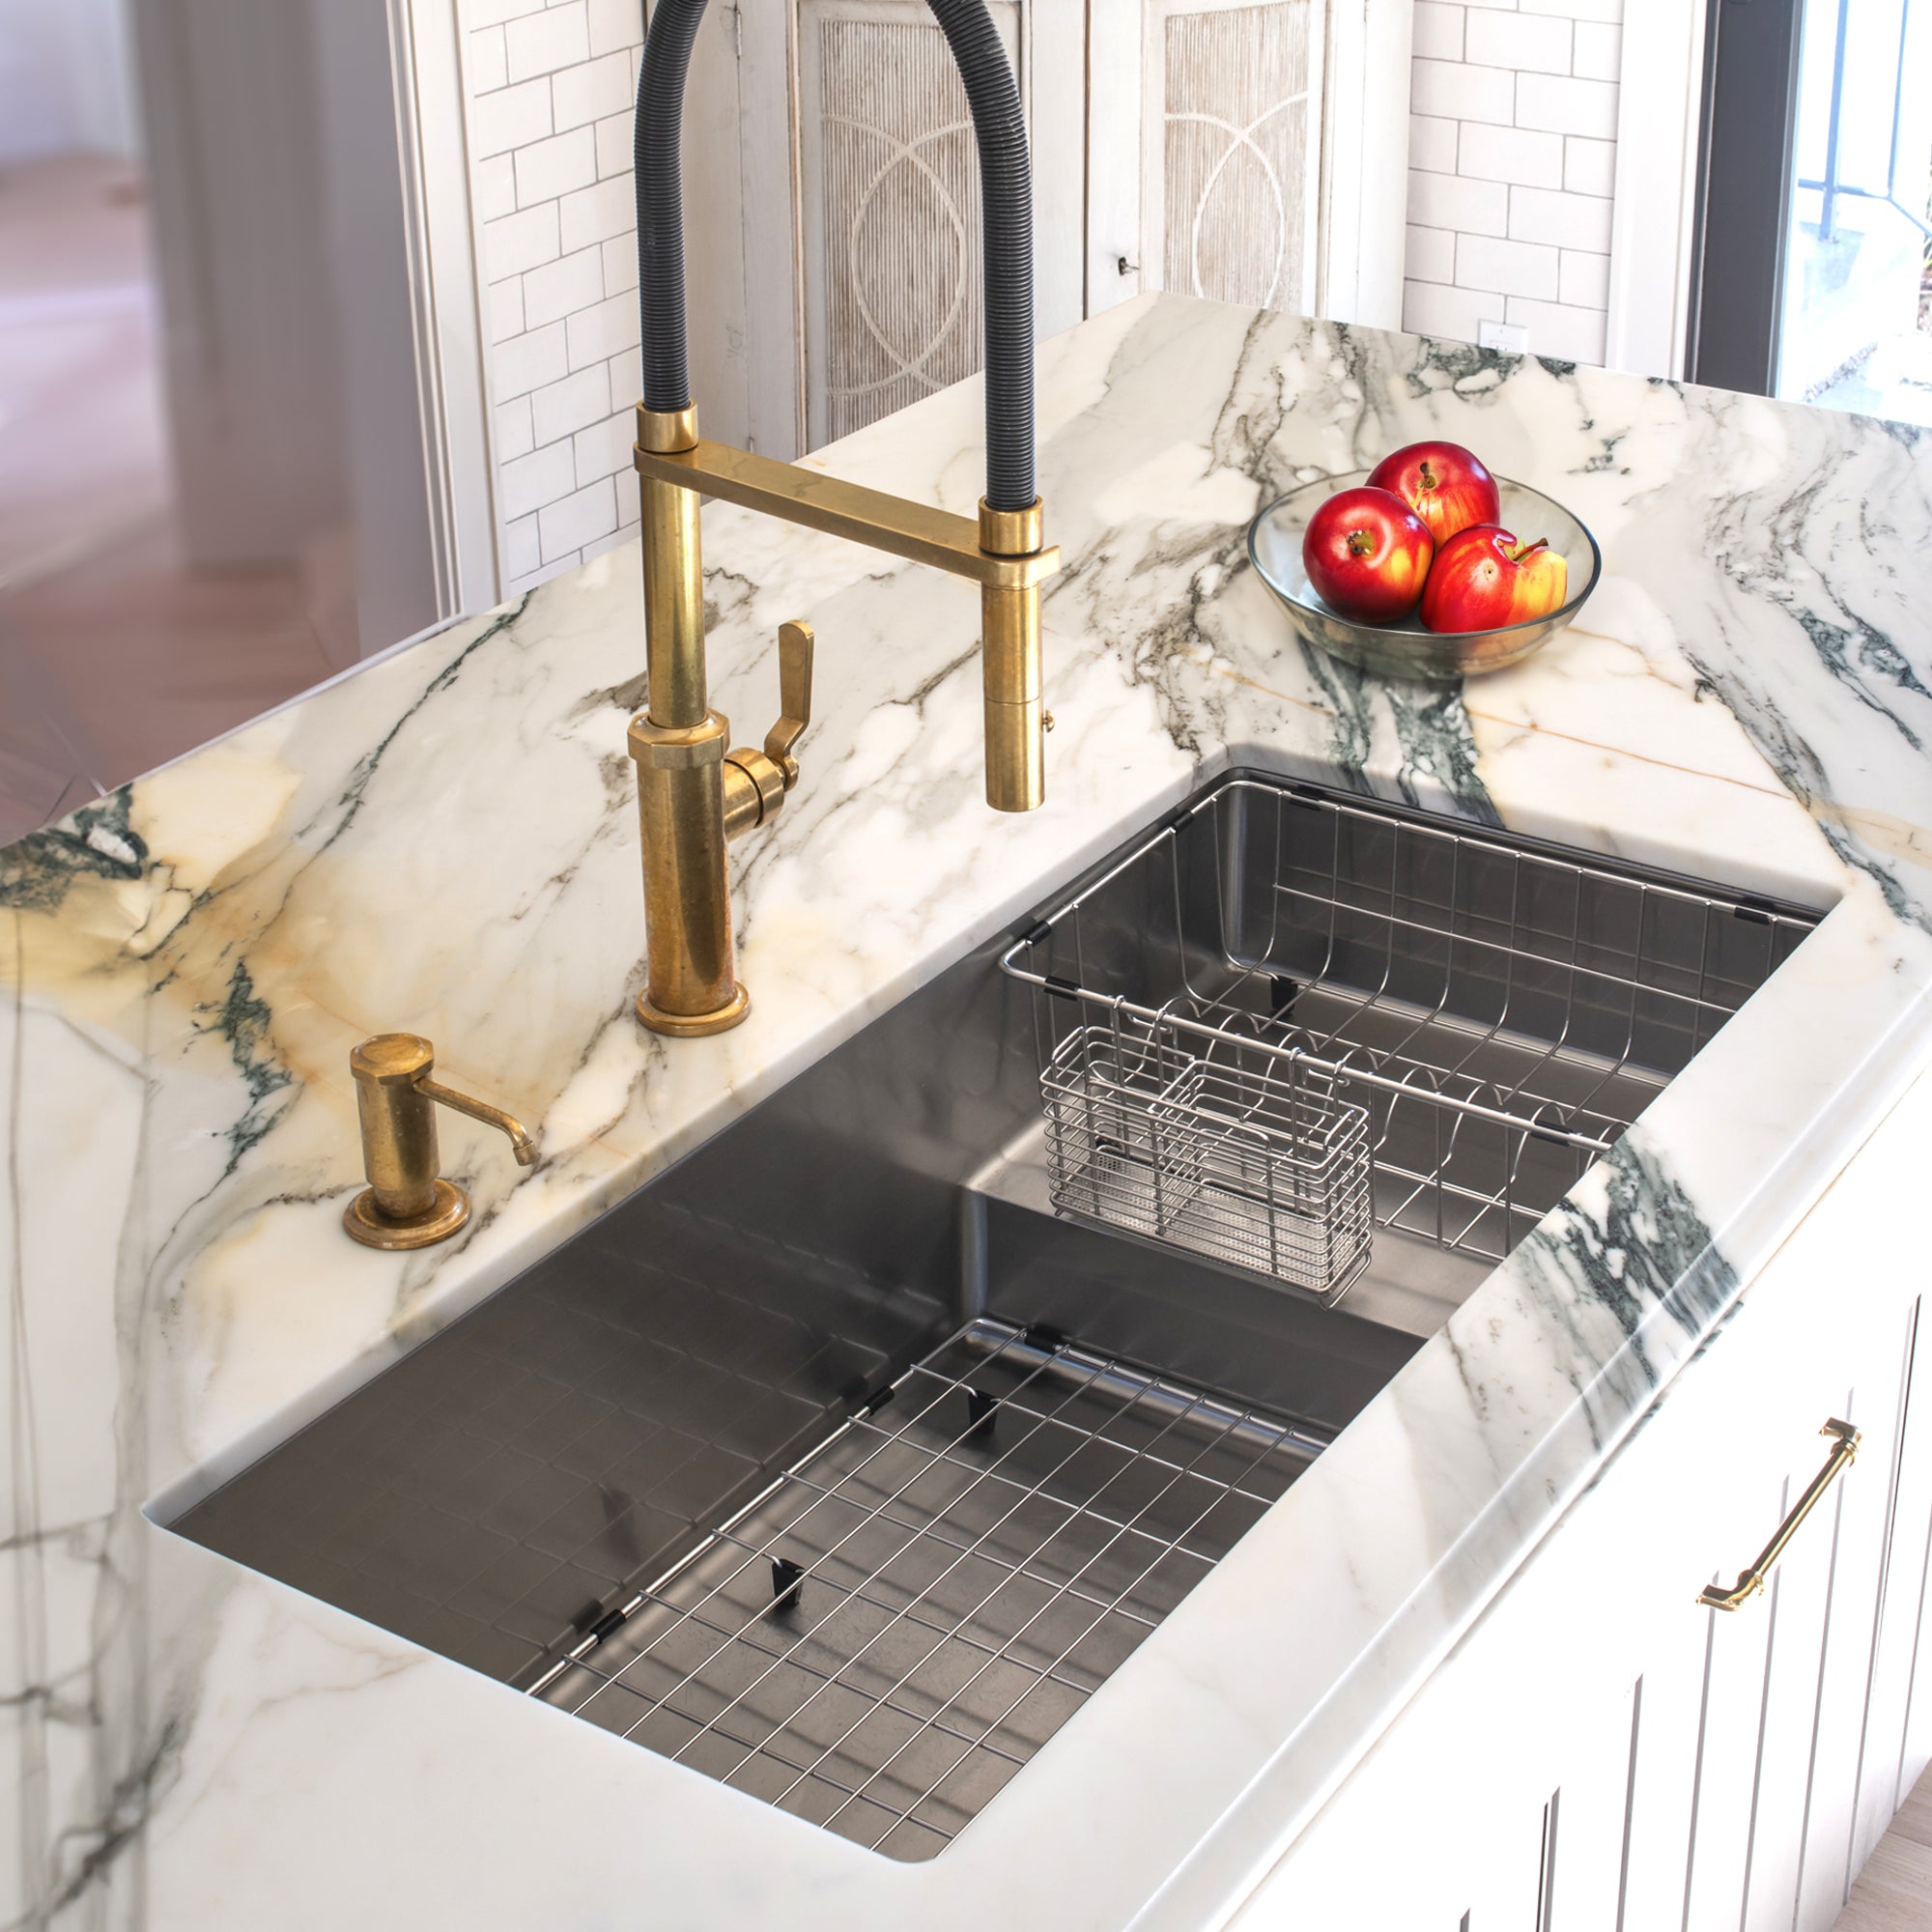 stainless kitchen sink